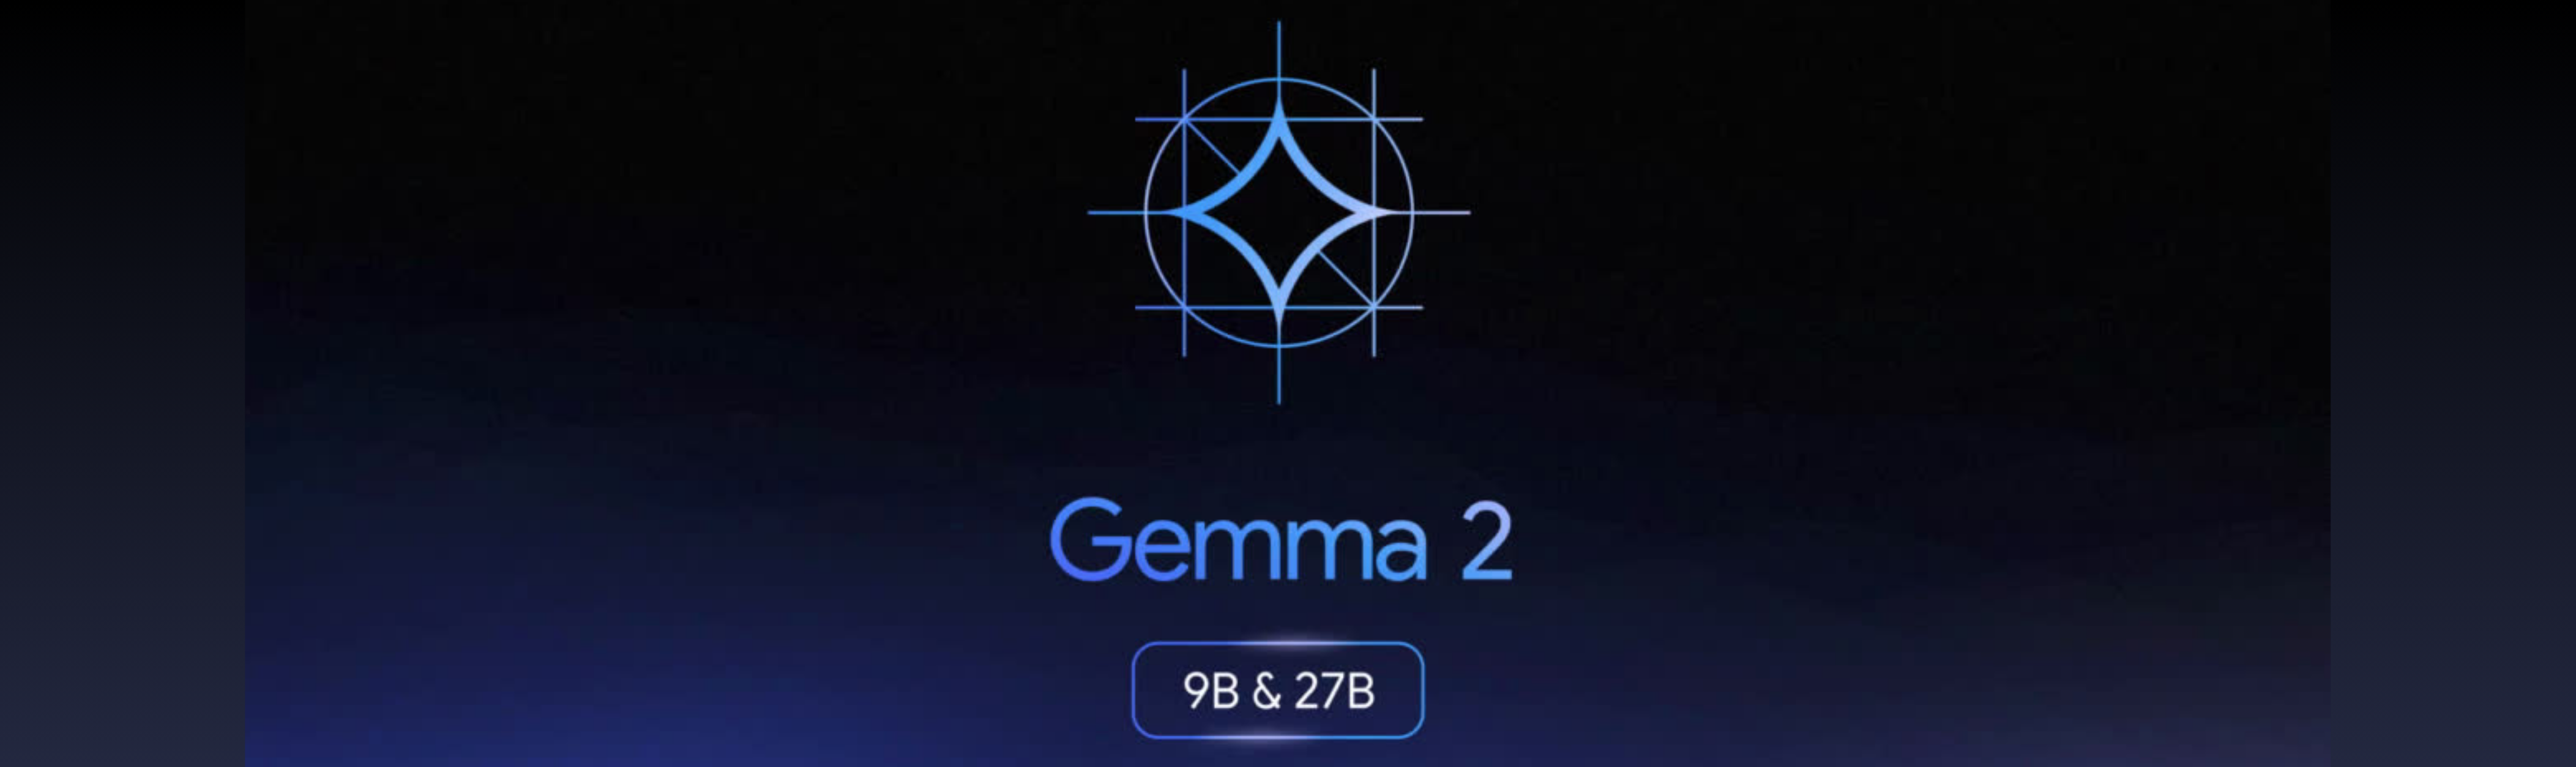 Gemma-2-9b-27b-header (2)